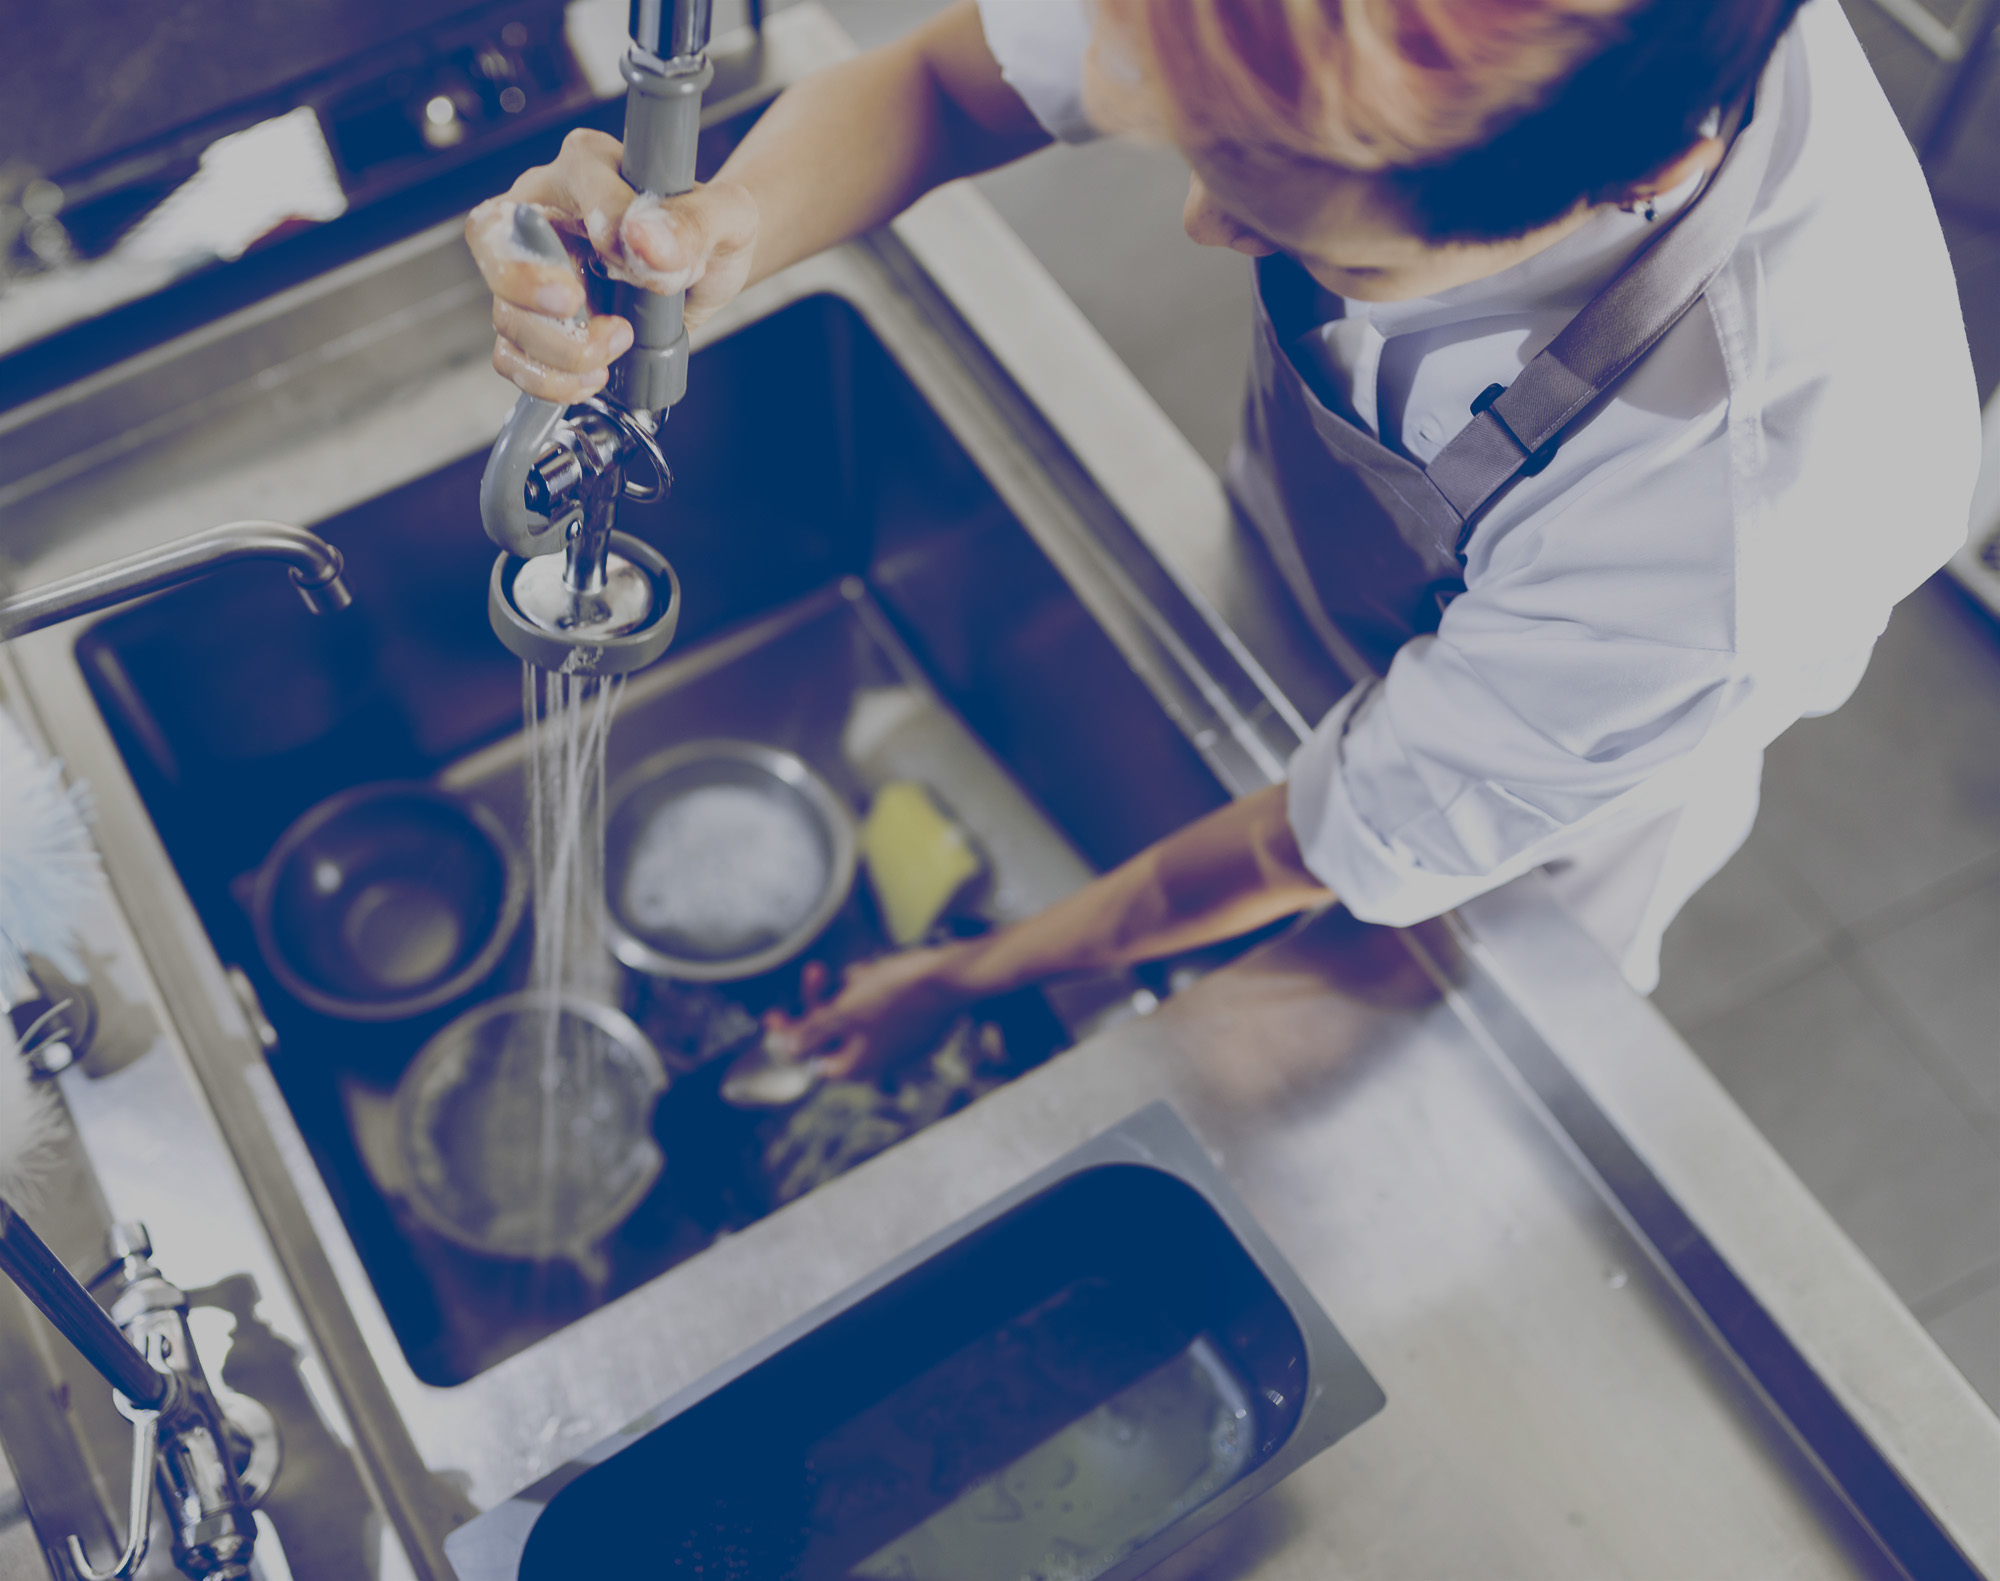 Un plongeur dans la cuisine d’un restaurant rince de la vaisselle sale dans un évier dont l’eau est chauffée au propane.